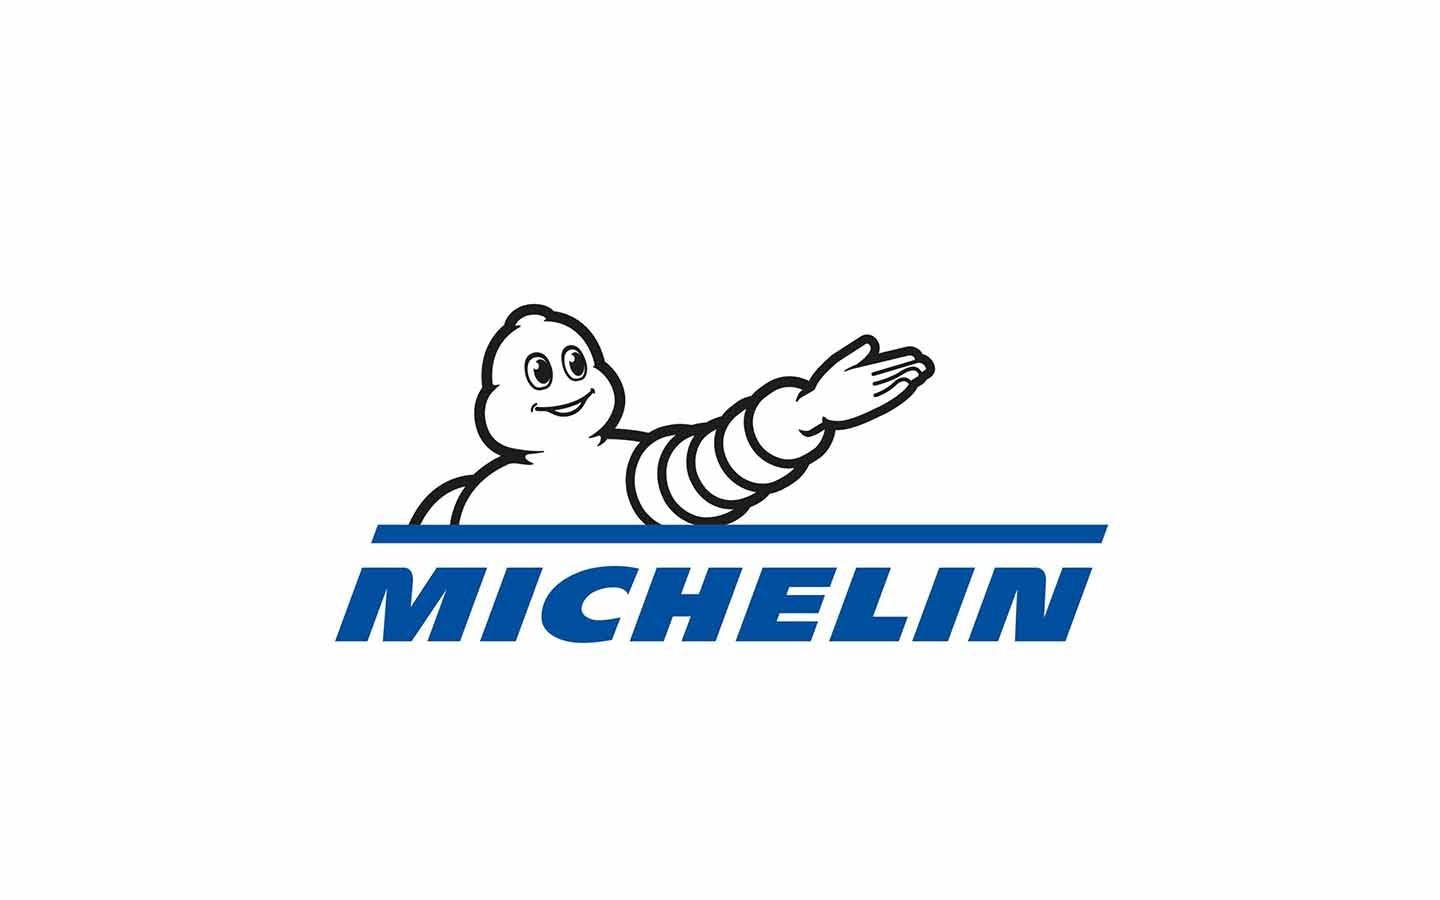 Michelin 360 video